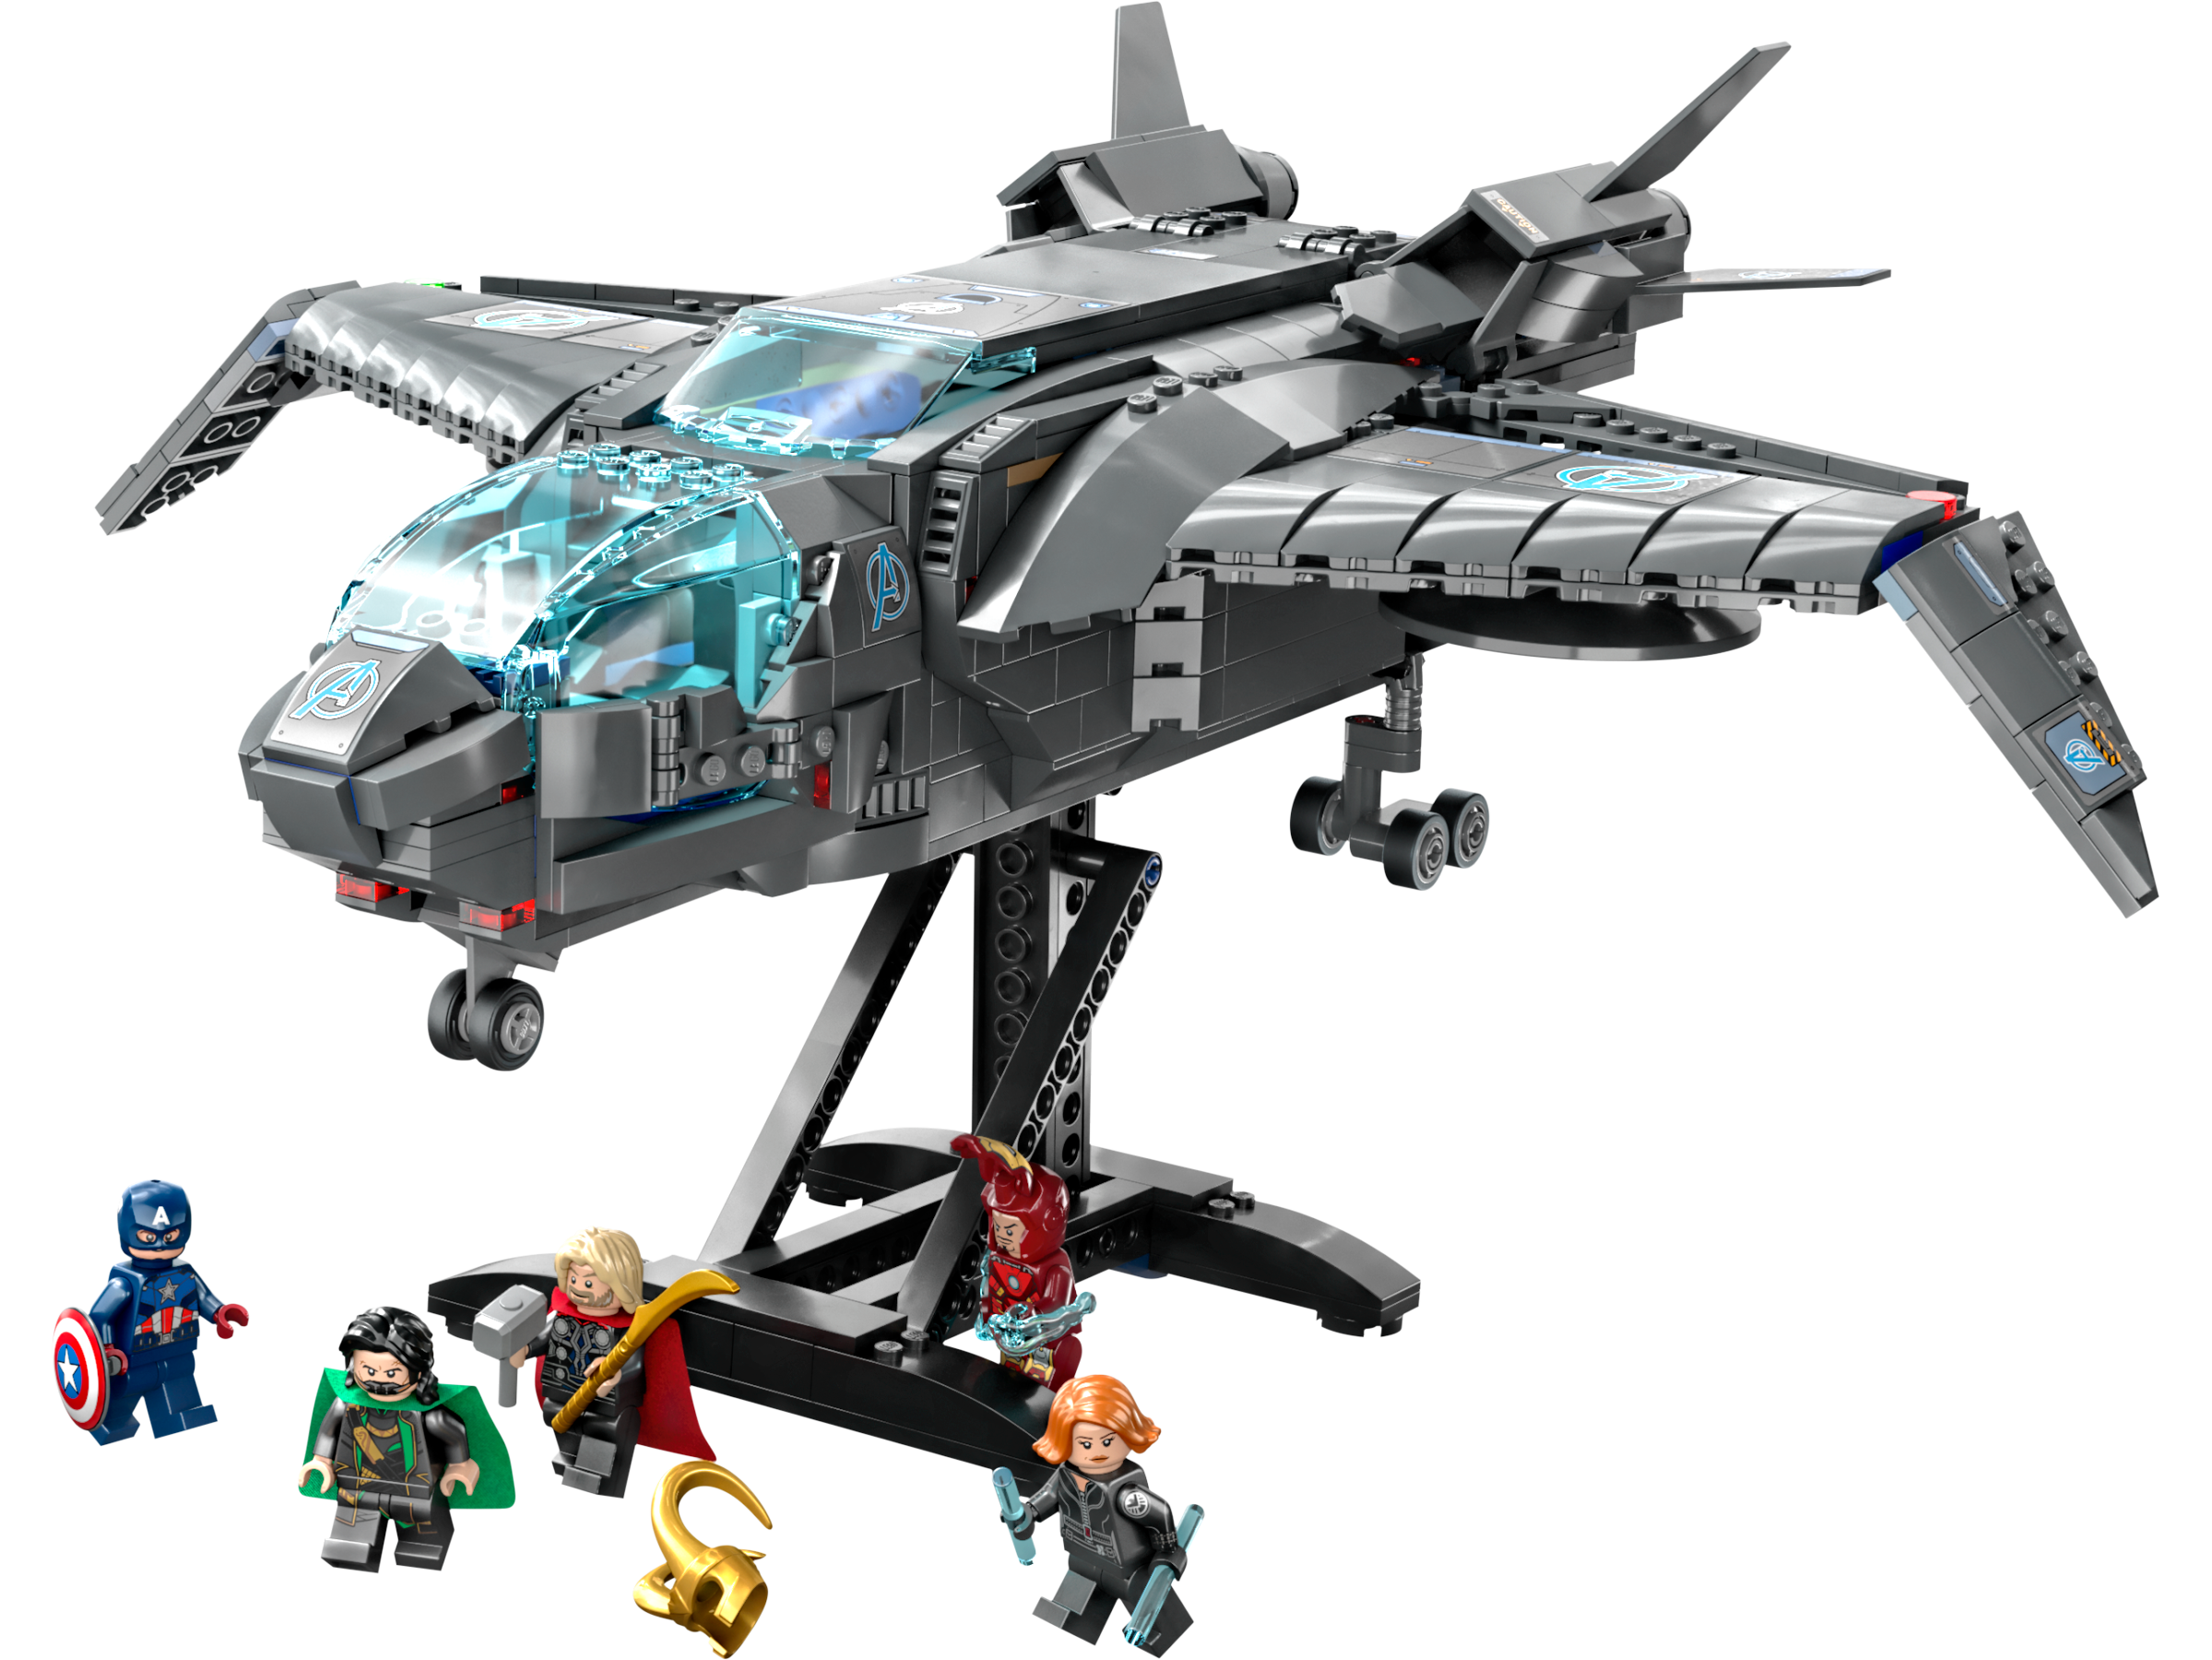 LEGO® Marvel Super Heroes 76248 Der Quinjet der Avengers